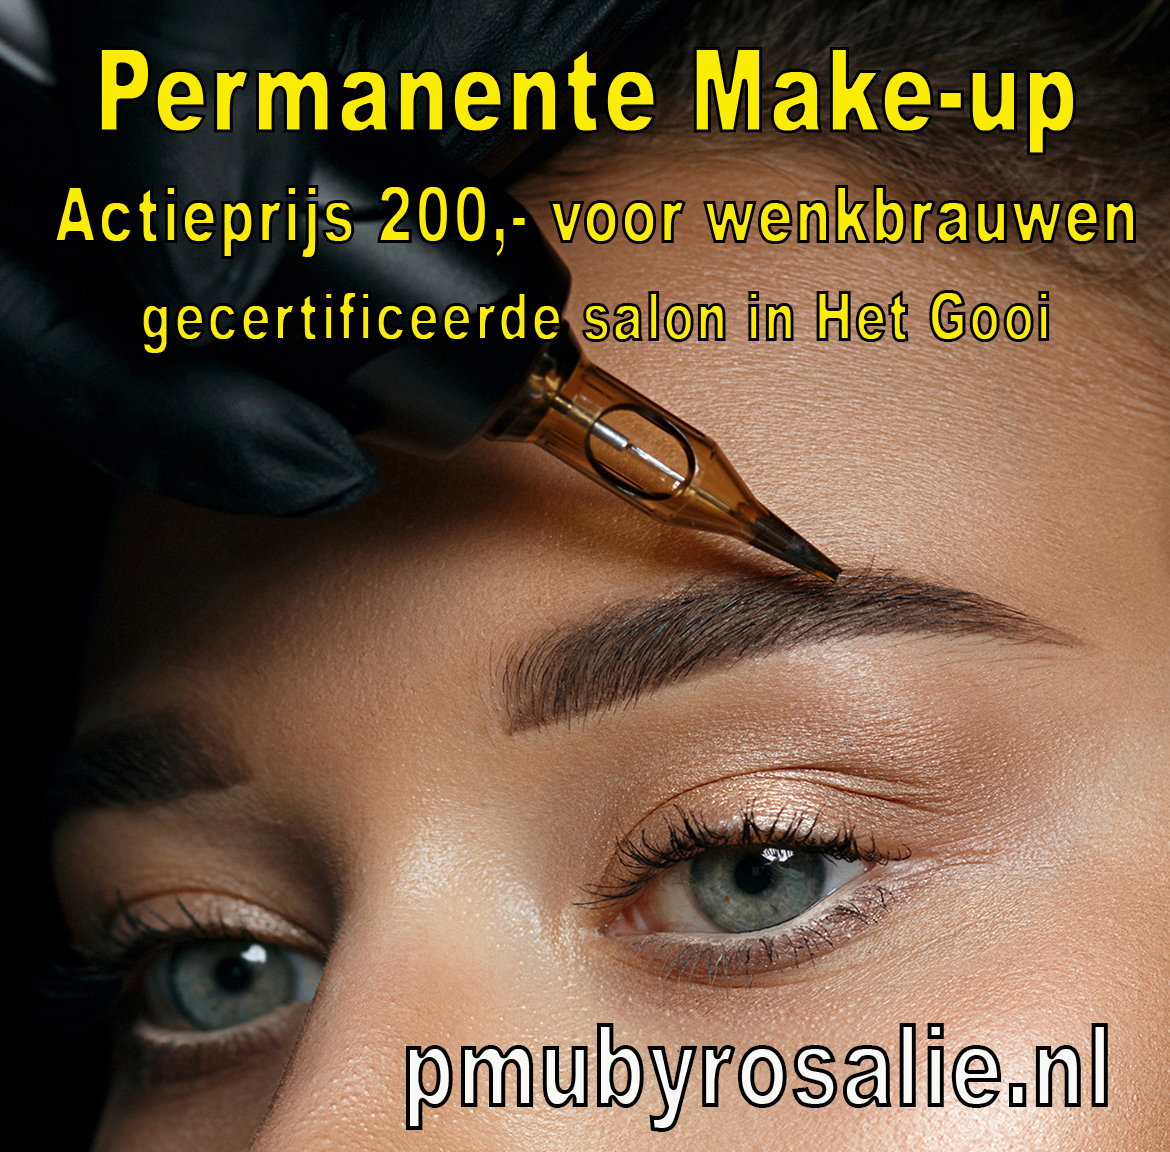  Permanente Make-up Lippen Ervaringen  thumbnail